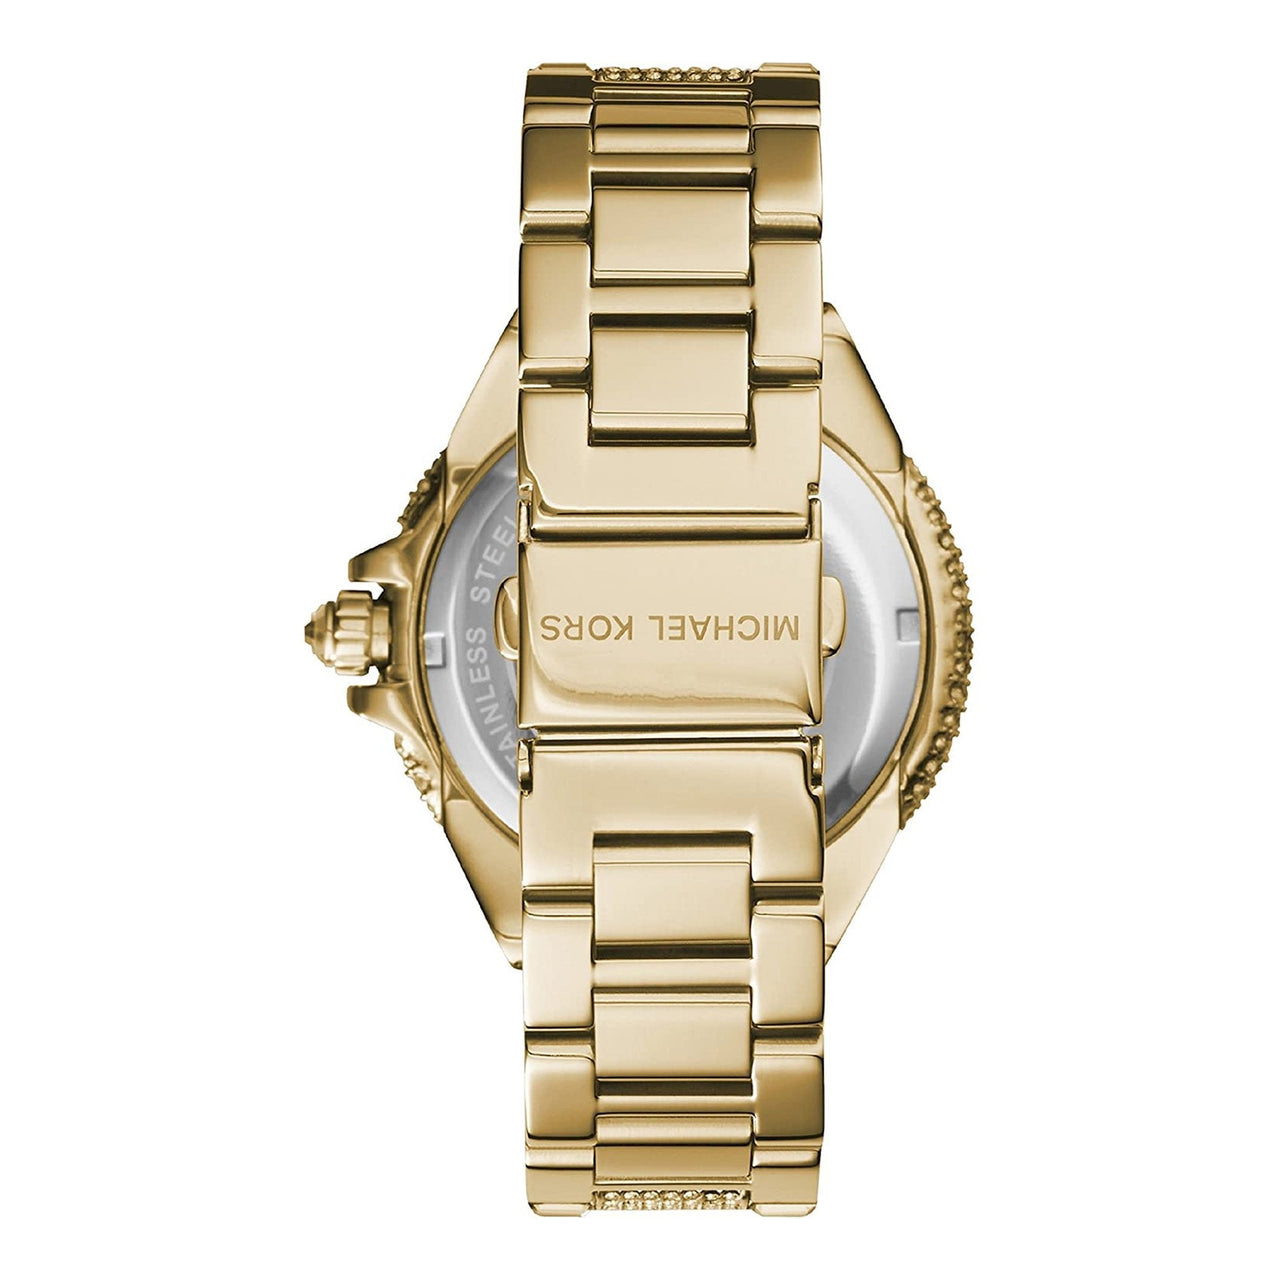 Michael Kors Ladies Watch Slim Runway 'LOVE' Gold MK3803 - Watches & Crystals